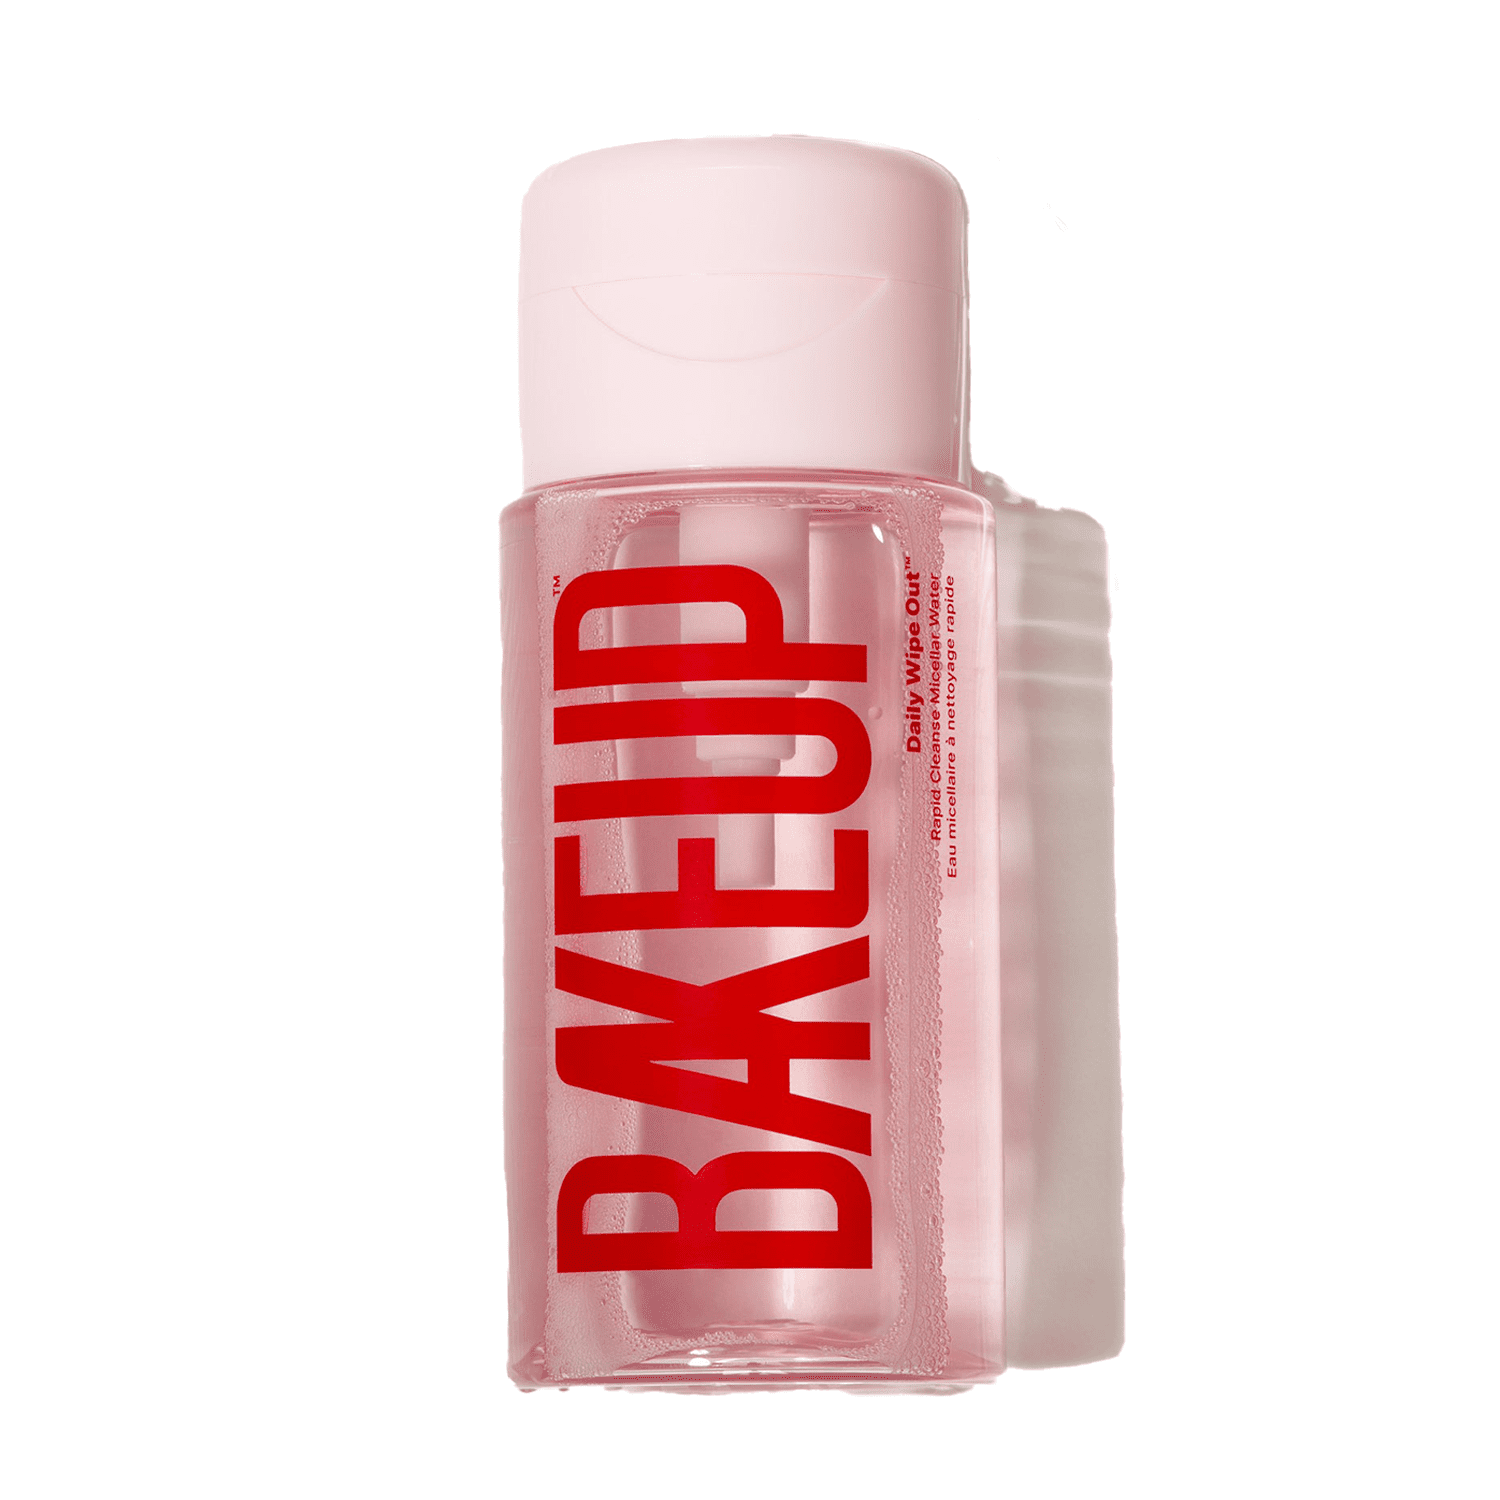 BakeUp diariamente limpando o remédio para maquiagem de água micelar